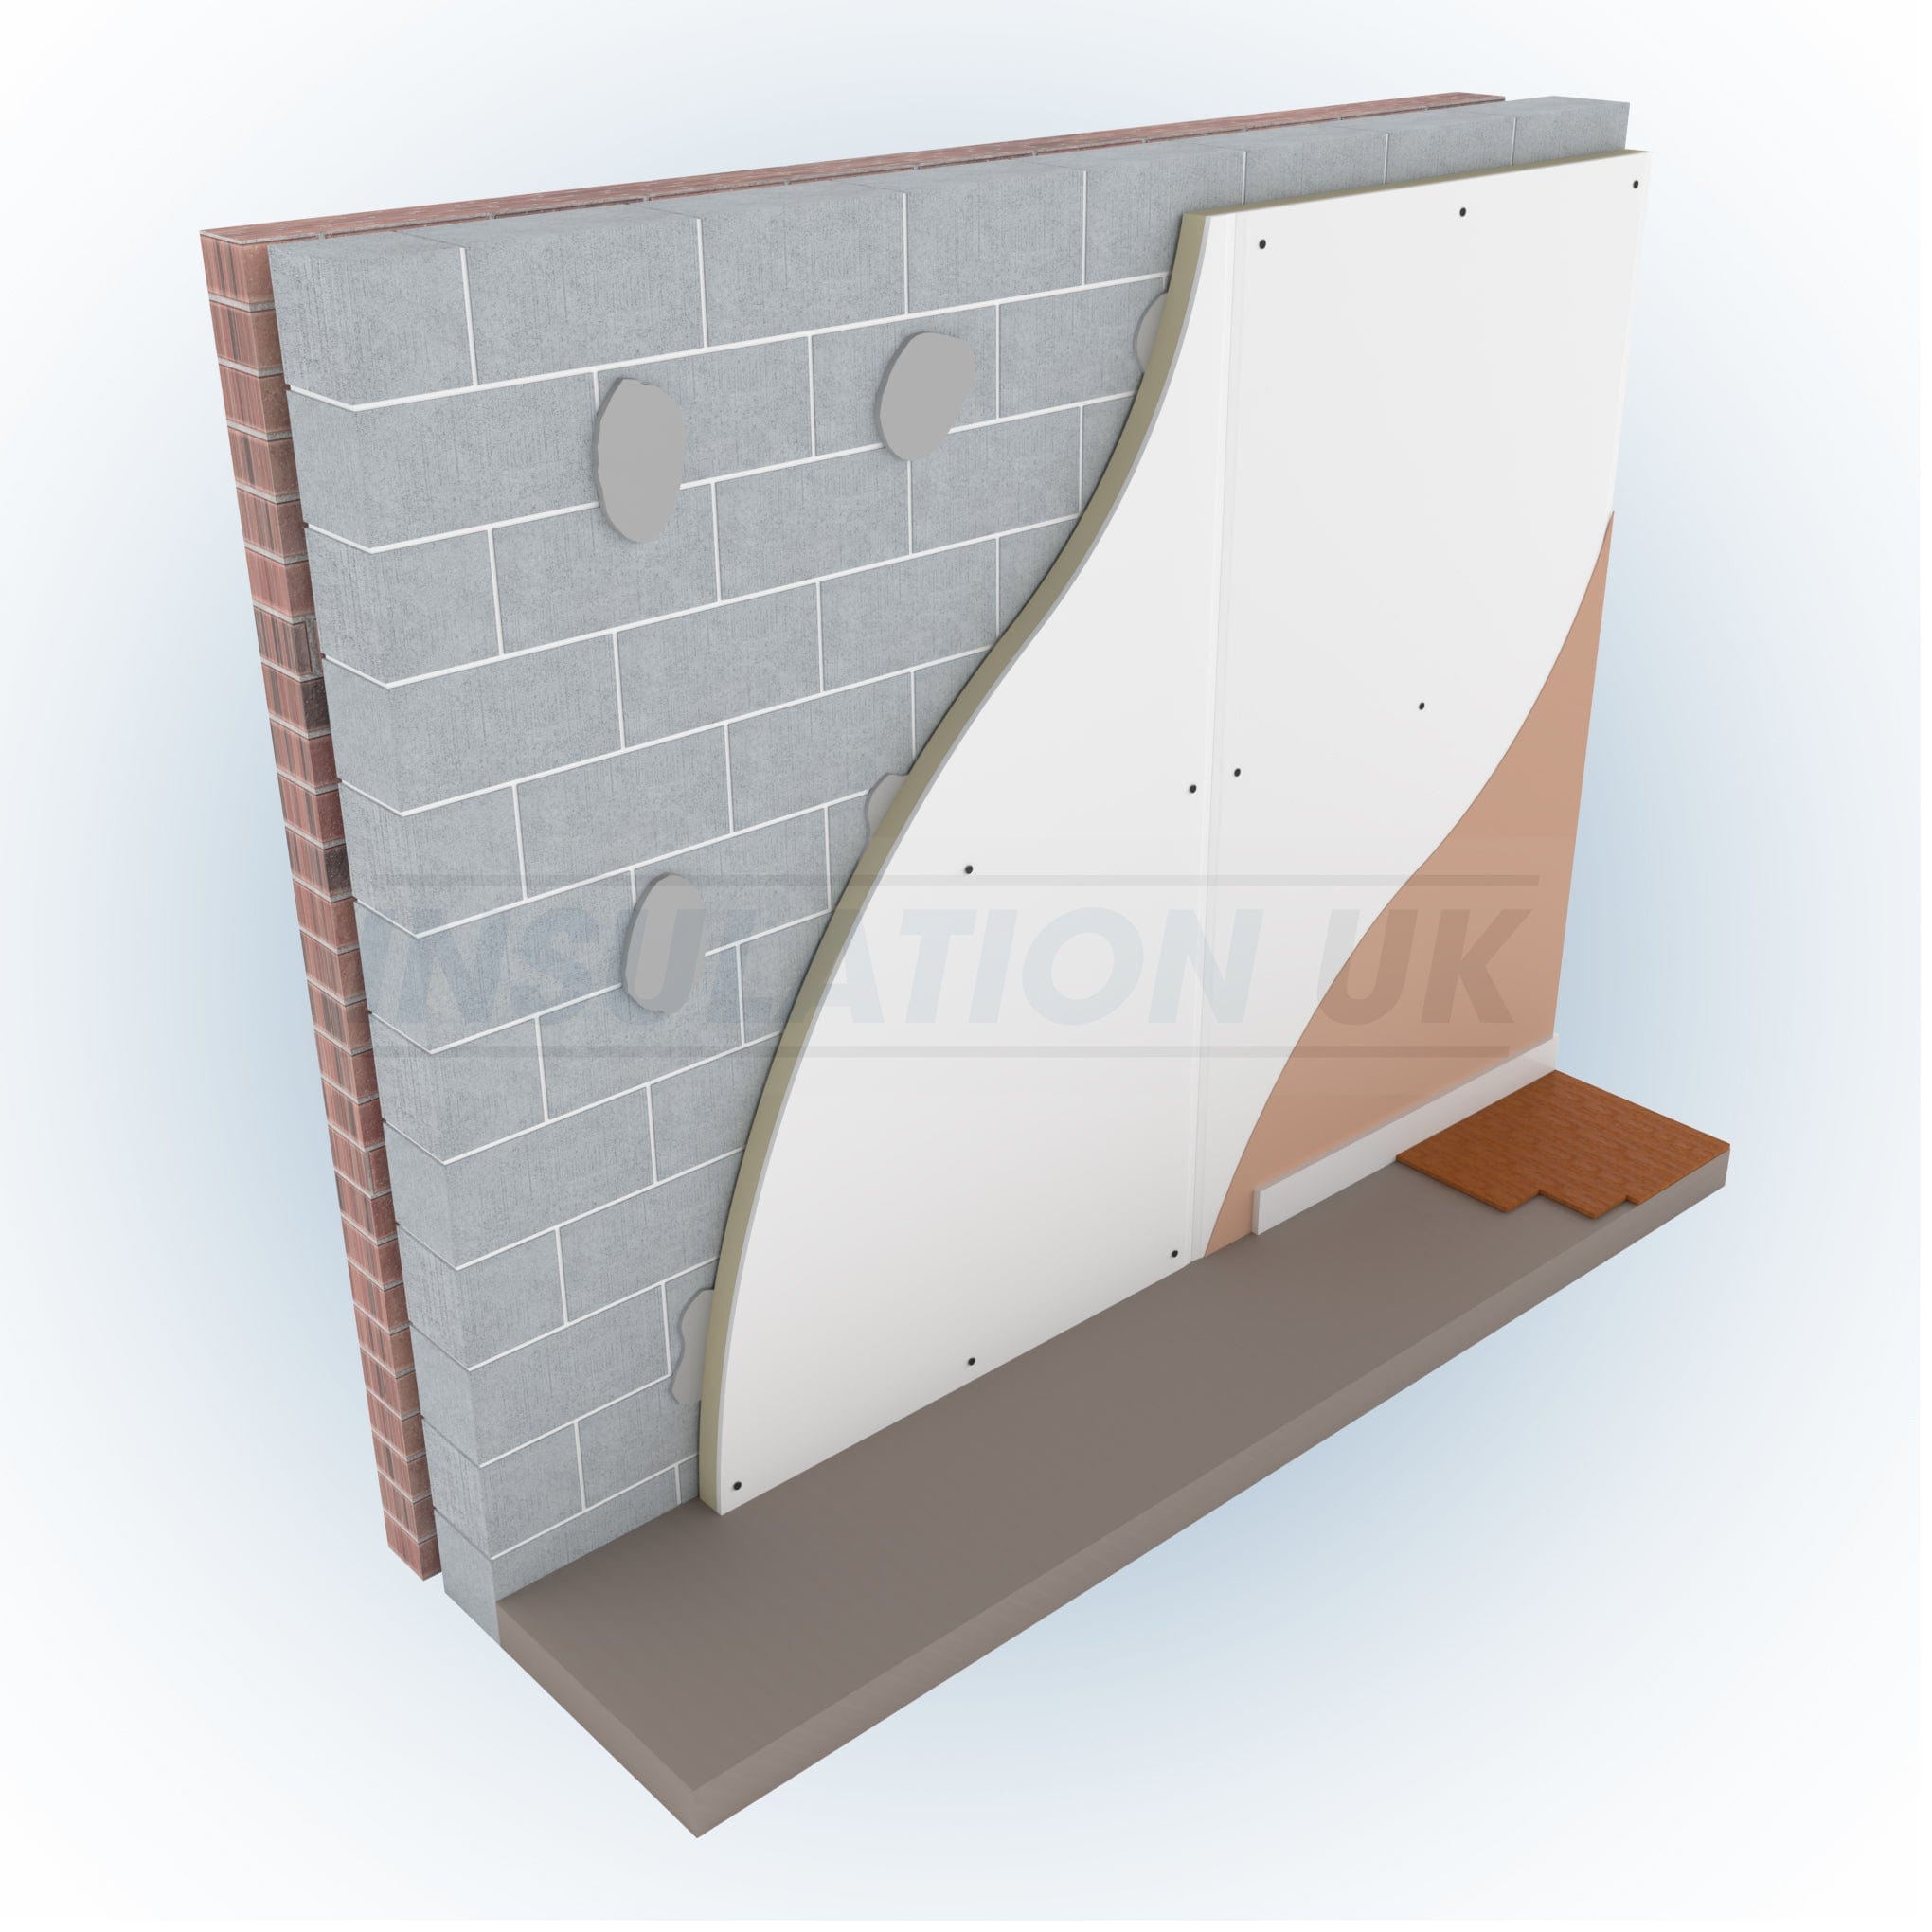 Tekwarm Insulation Tekwarm PIR Insulated Plasterboard - Thermal Laminate Board | 2400mm x 1200mm x 37.5mm BM02035 Tekwarm PIR Insulated Plasterboard - Thermal Laminate 2400 x 1200 x 37.5mm